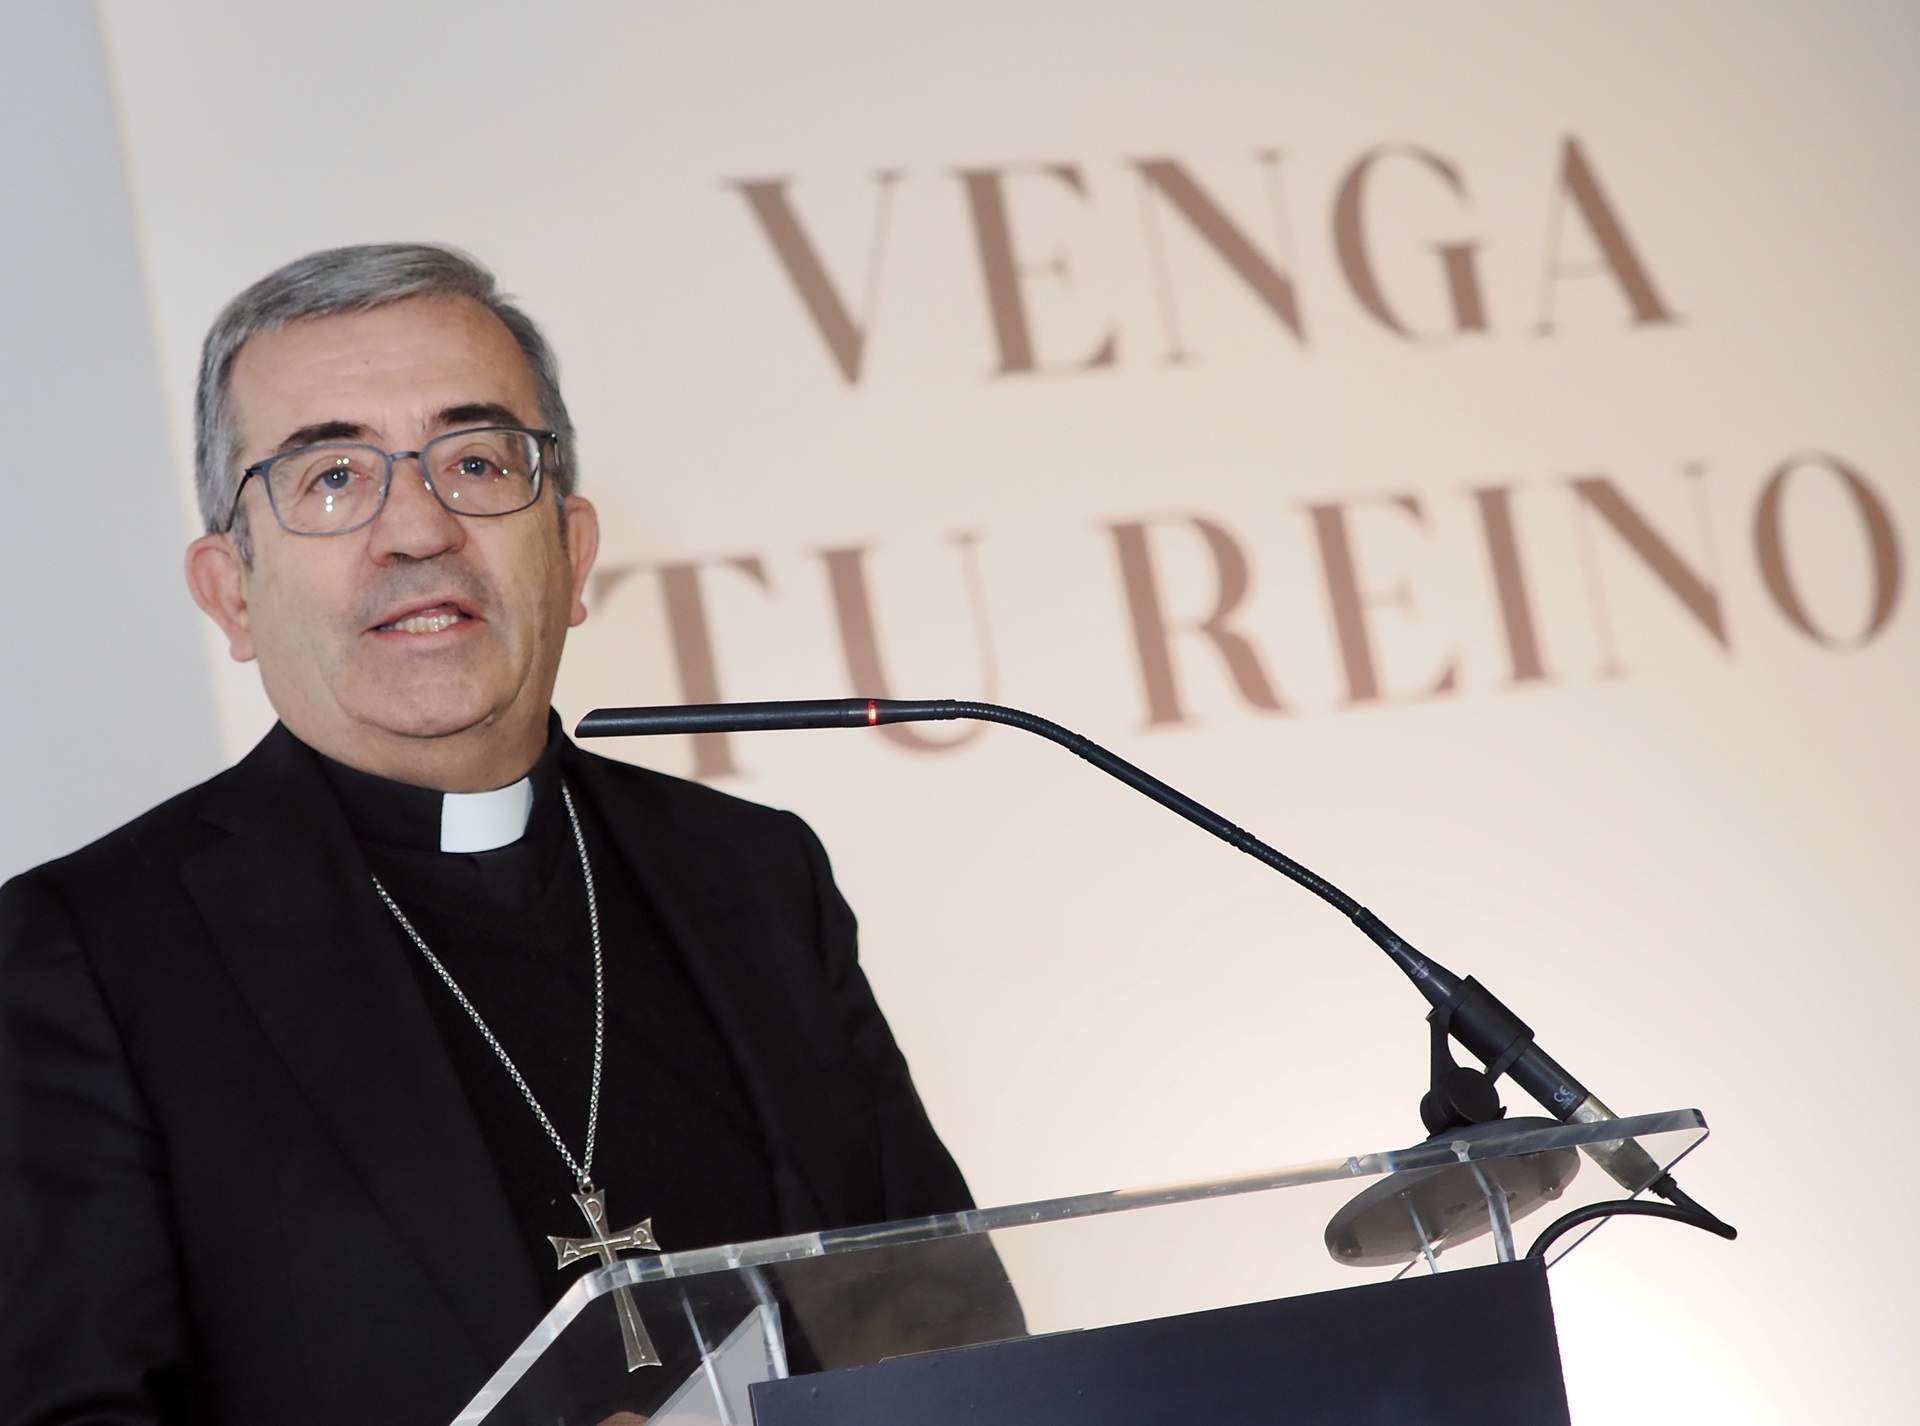 Luis Argüello, arzobispo de Valladolid, nuevo presidente de la Conferencia Episcopal